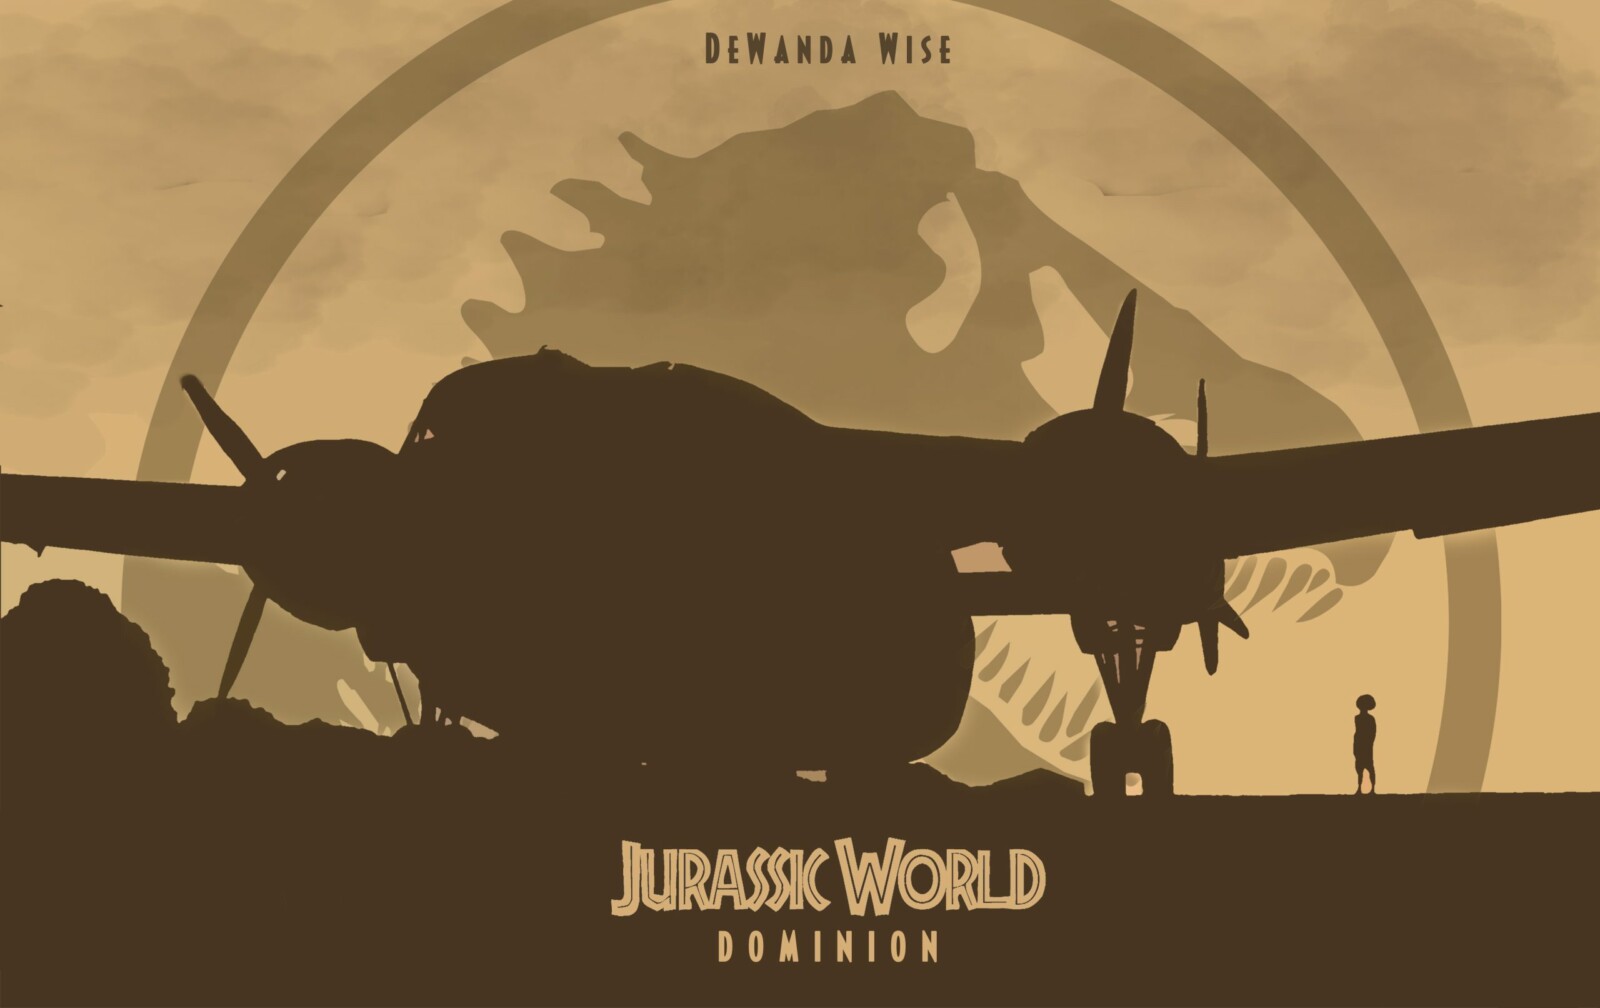 Jurassic World Dominion – Kayla Watts Silhouette